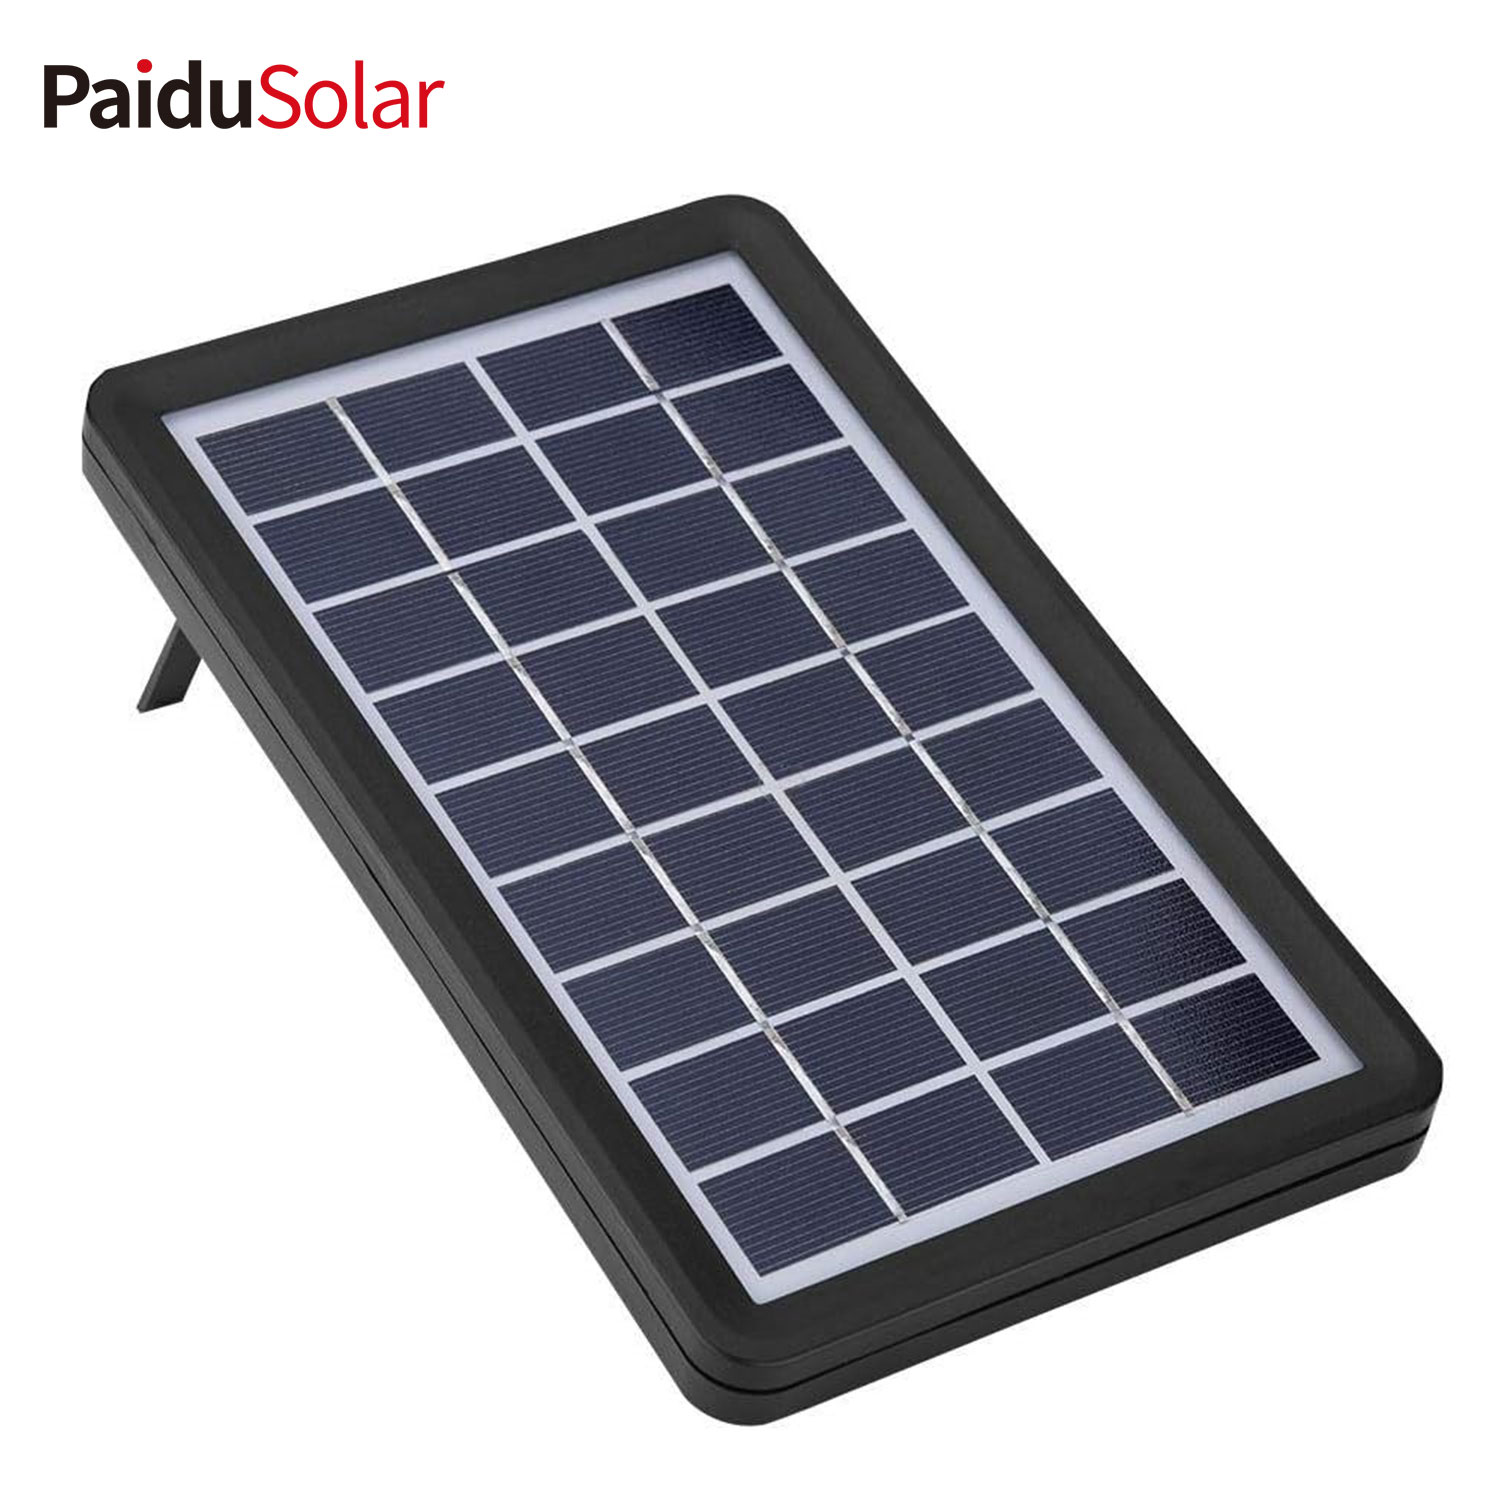 PaduSolar 9V 3W Poly Silicon Solar Panel Solar Cell No ka Waapa Hoʻopiha Paʻa